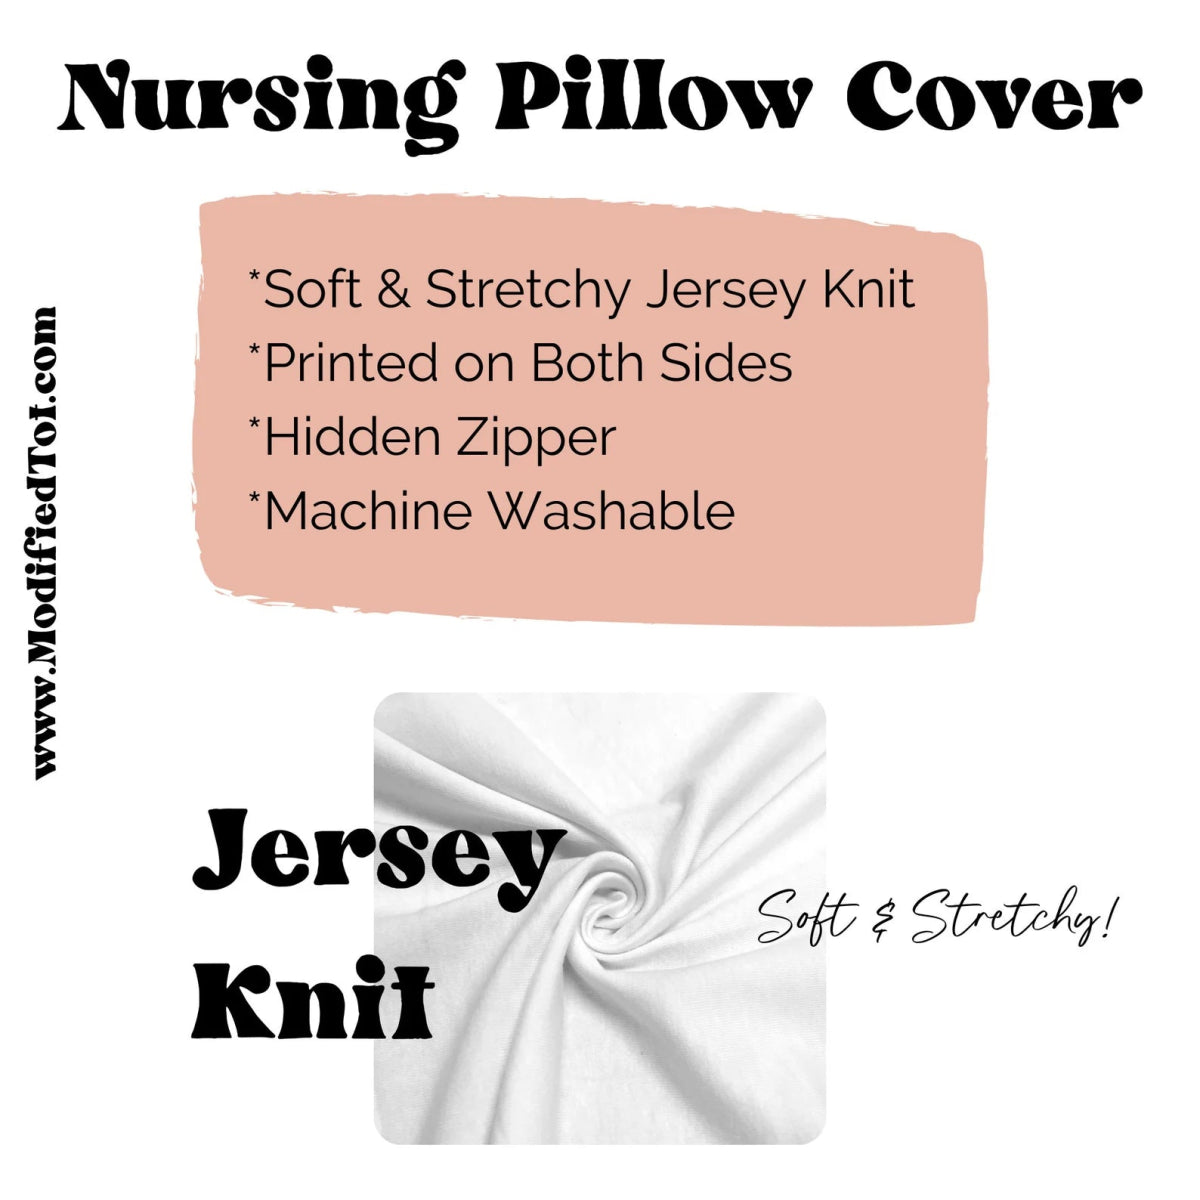 Preppy Summer Nursing Pillow Cover - gender_girl, Preppy Summer, Theme_Tropical